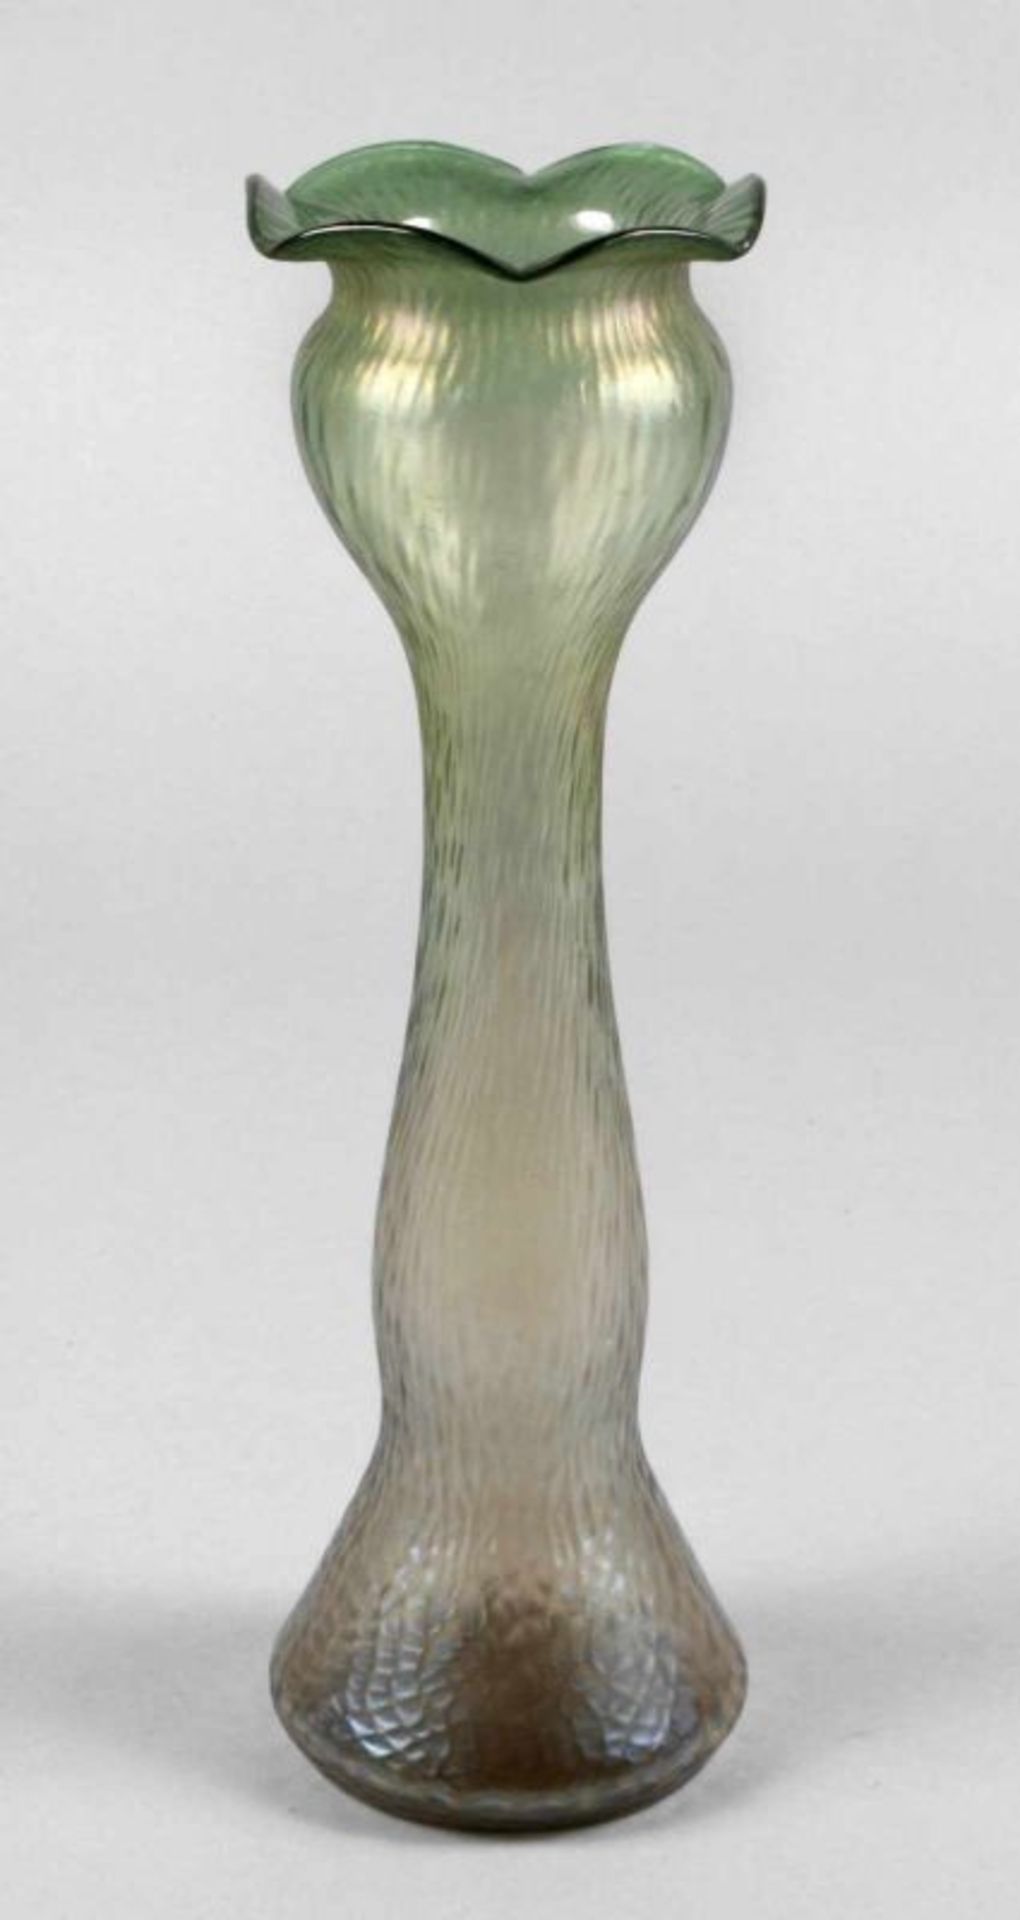 Loetz Wwe. Hyazinthenvase um 1900, klares Glas, nach grün verlaufend, blasiger Abriss,